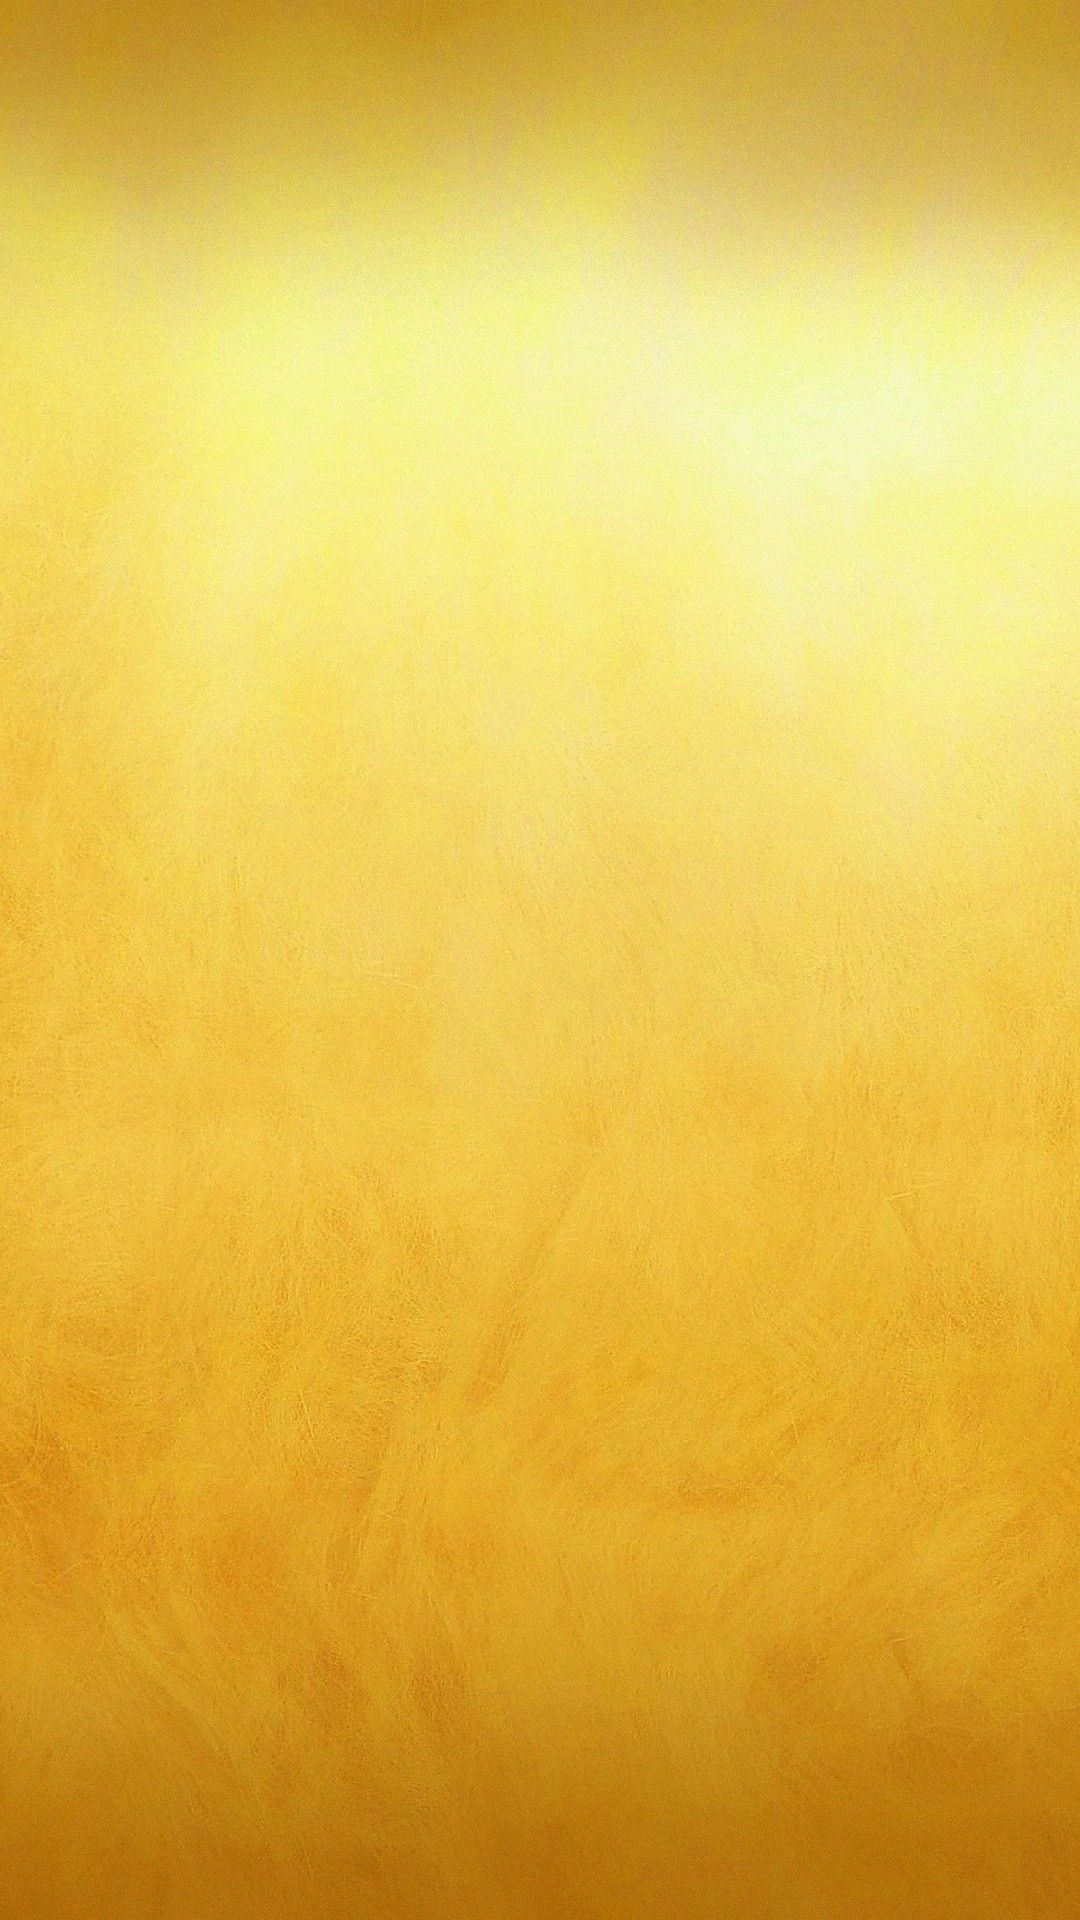 Hình nền vàng 24K là sự kết hợp tuyệt vời giữa sắc độc đáo và vẻ đẹp trang nhã. Khi kết hợp cùng với màn hình điện thoại, hình nền sẽ tạo nên một hiệu ứng ánh sáng vàng rực rỡ đầy ấn tượng. Hãy để hình nền của bạn nói lên phong cách của bạn.